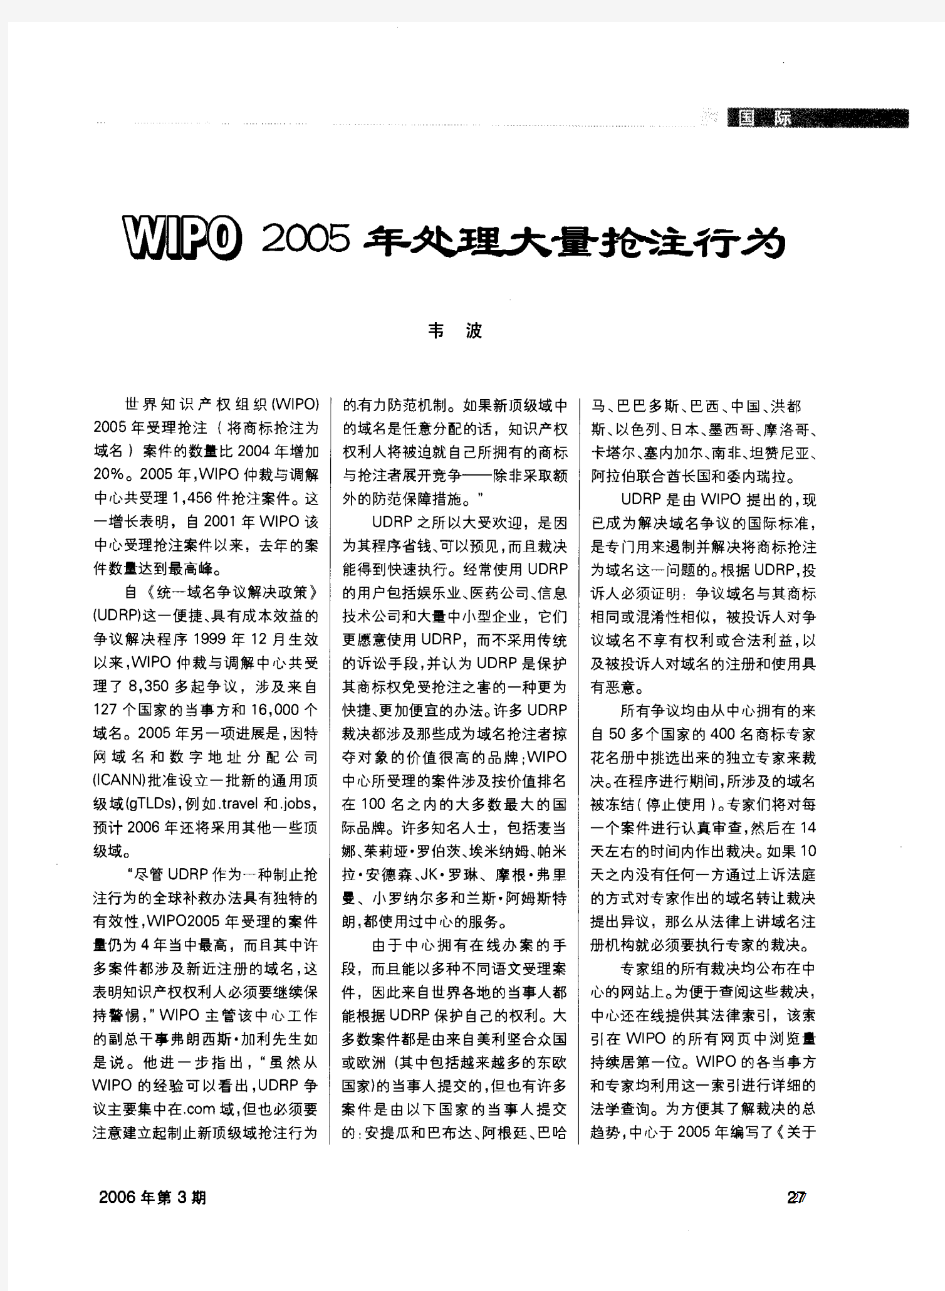 世界知识产权组织(WlPO)